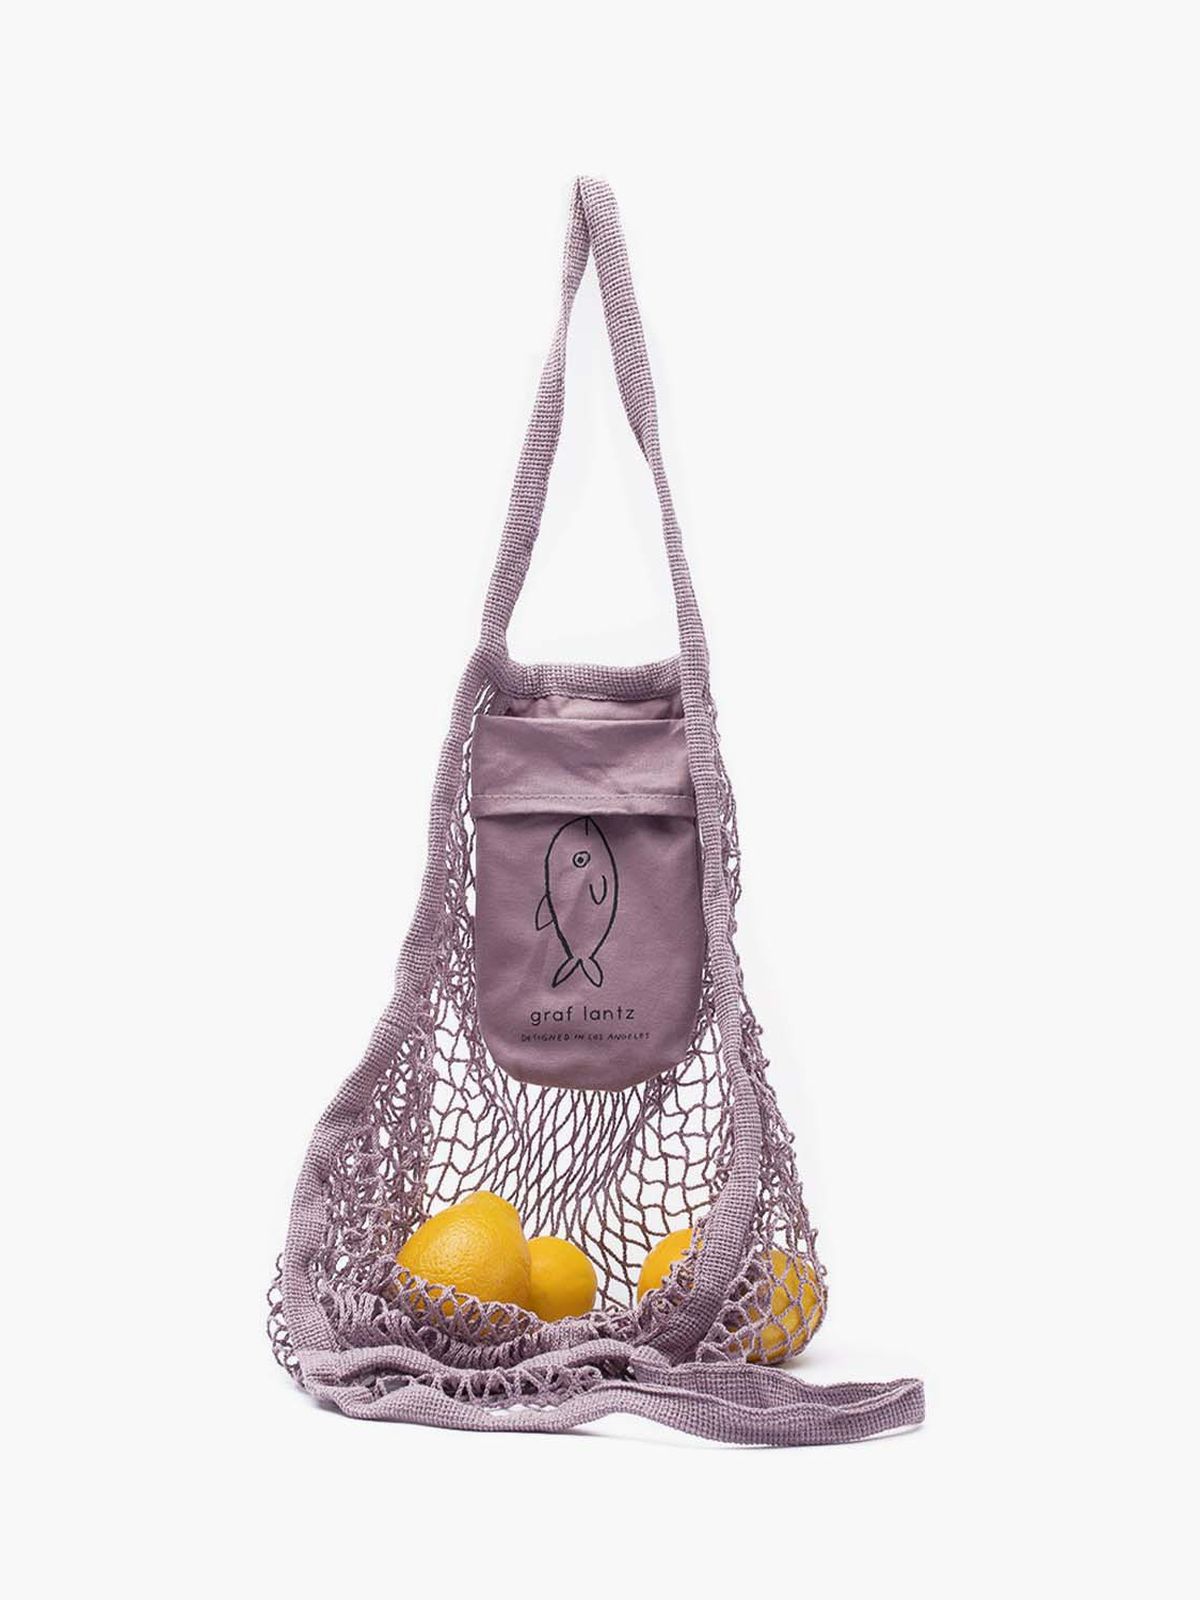 A net tote bag with a lemon